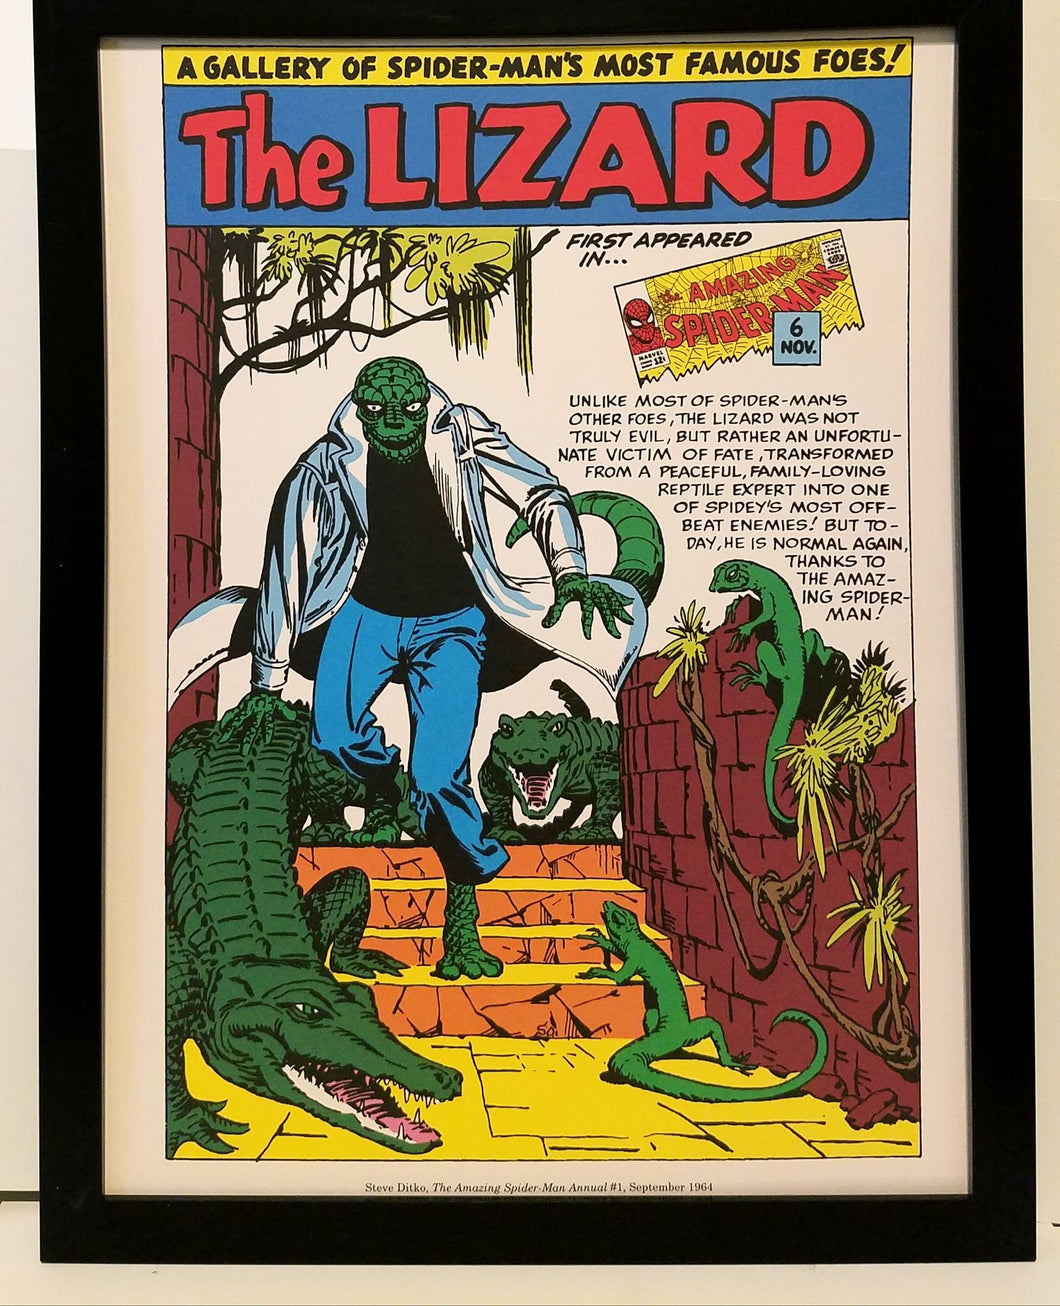 Spider-Man Lizard by Steve Ditko 9x12 FRAMED Marvel Comics Vintage Art Print Poster